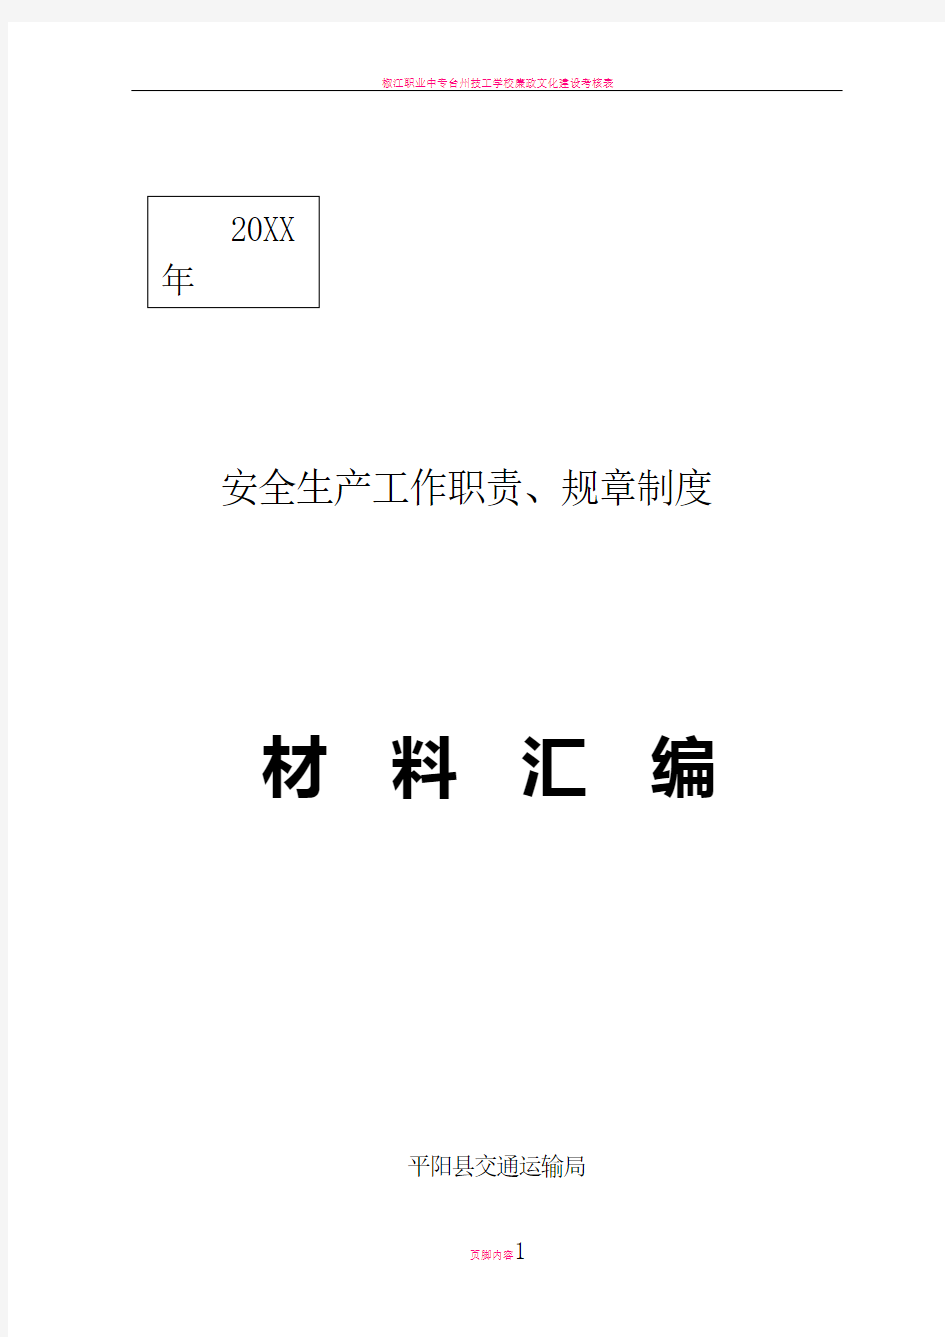 平阳县交通运输局安全生产工作职责规章制度材料汇编